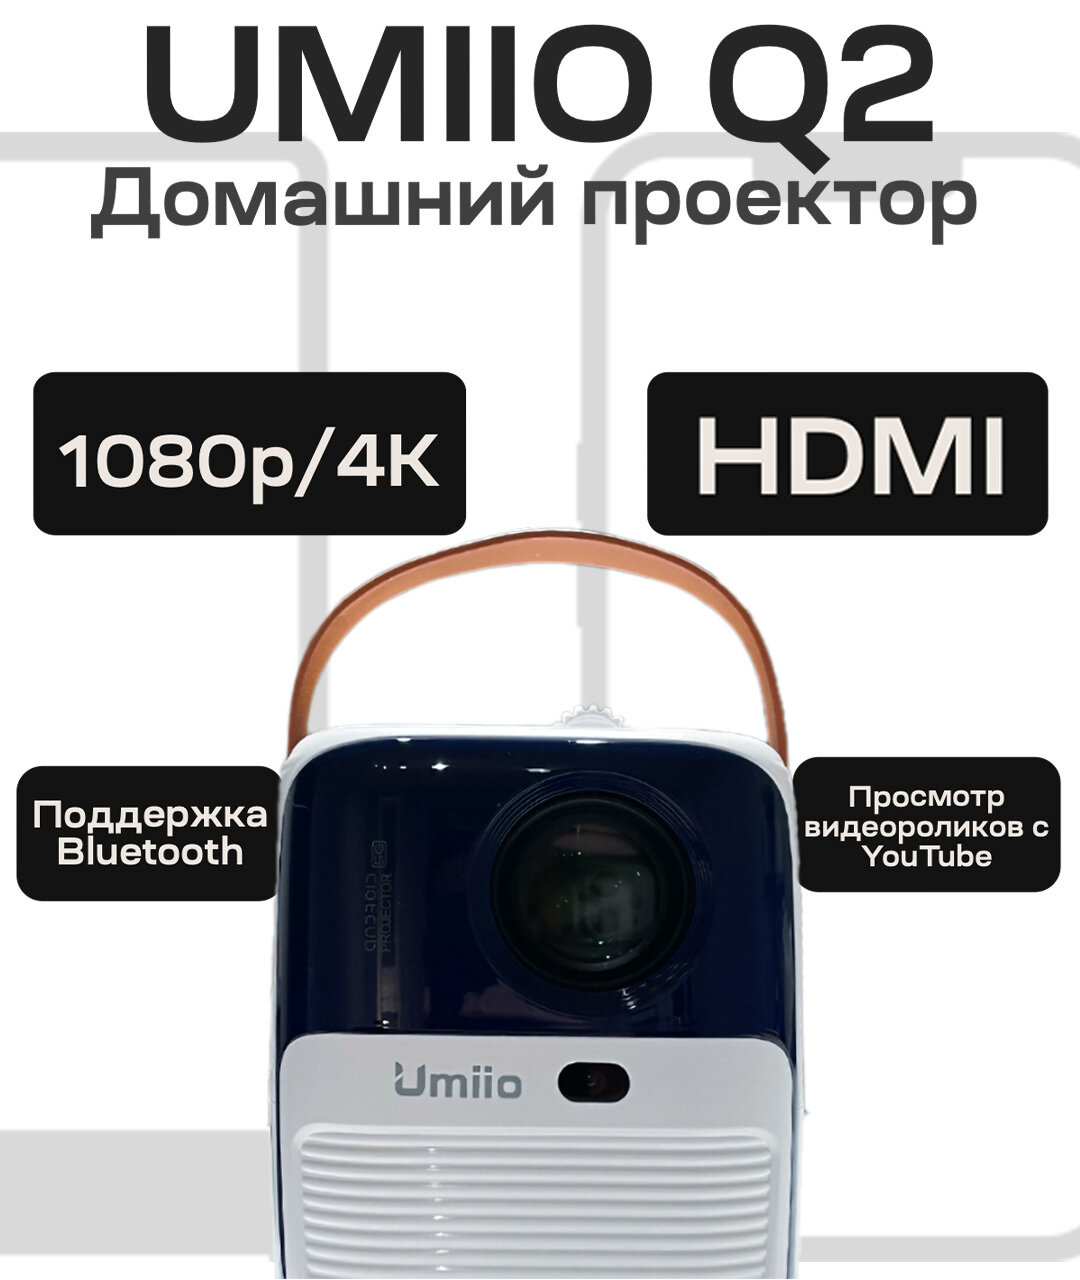 Портативный проектор Umiio Q2(А010) Ultra c разъемом hdmi для работы, фильмов, YouTube, приставок PlayStation или X-Box и других гаджетов. Белый